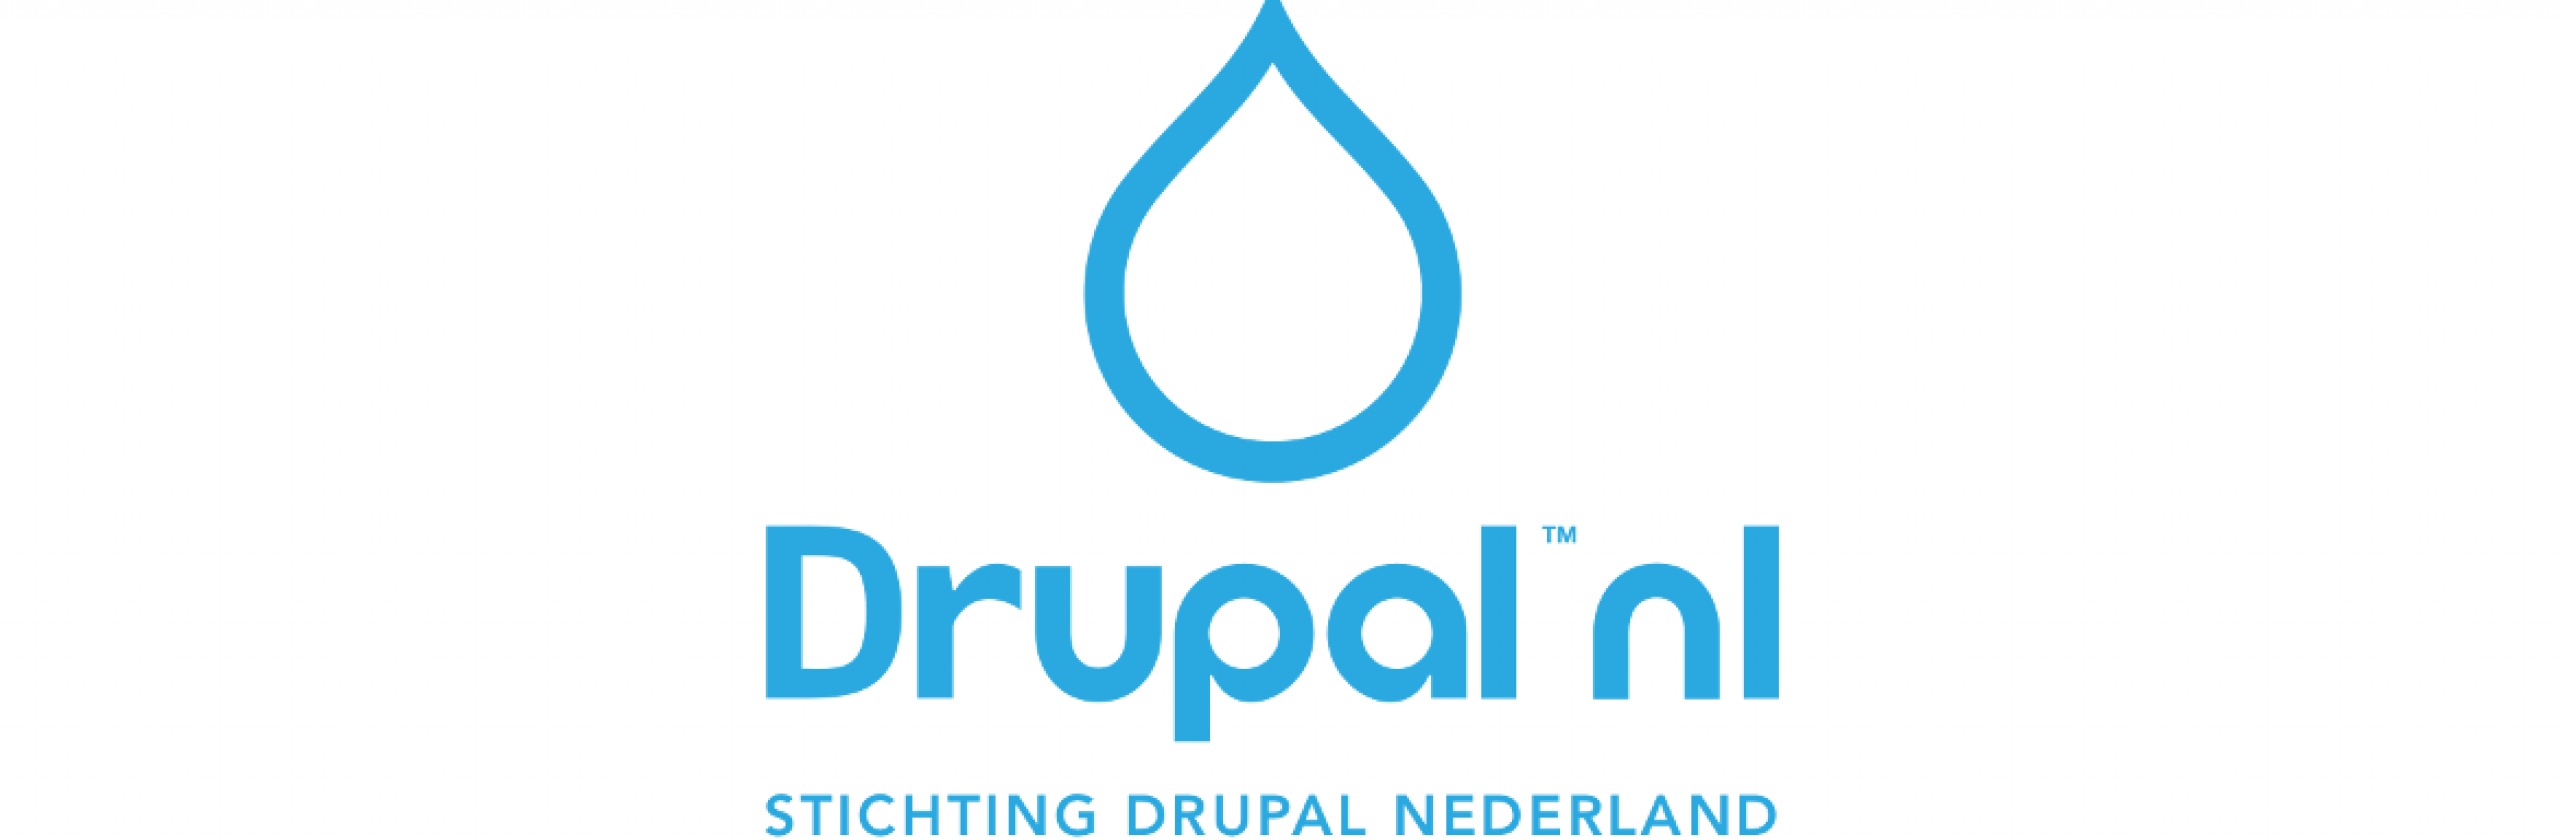 Stichting Drupal Nederland